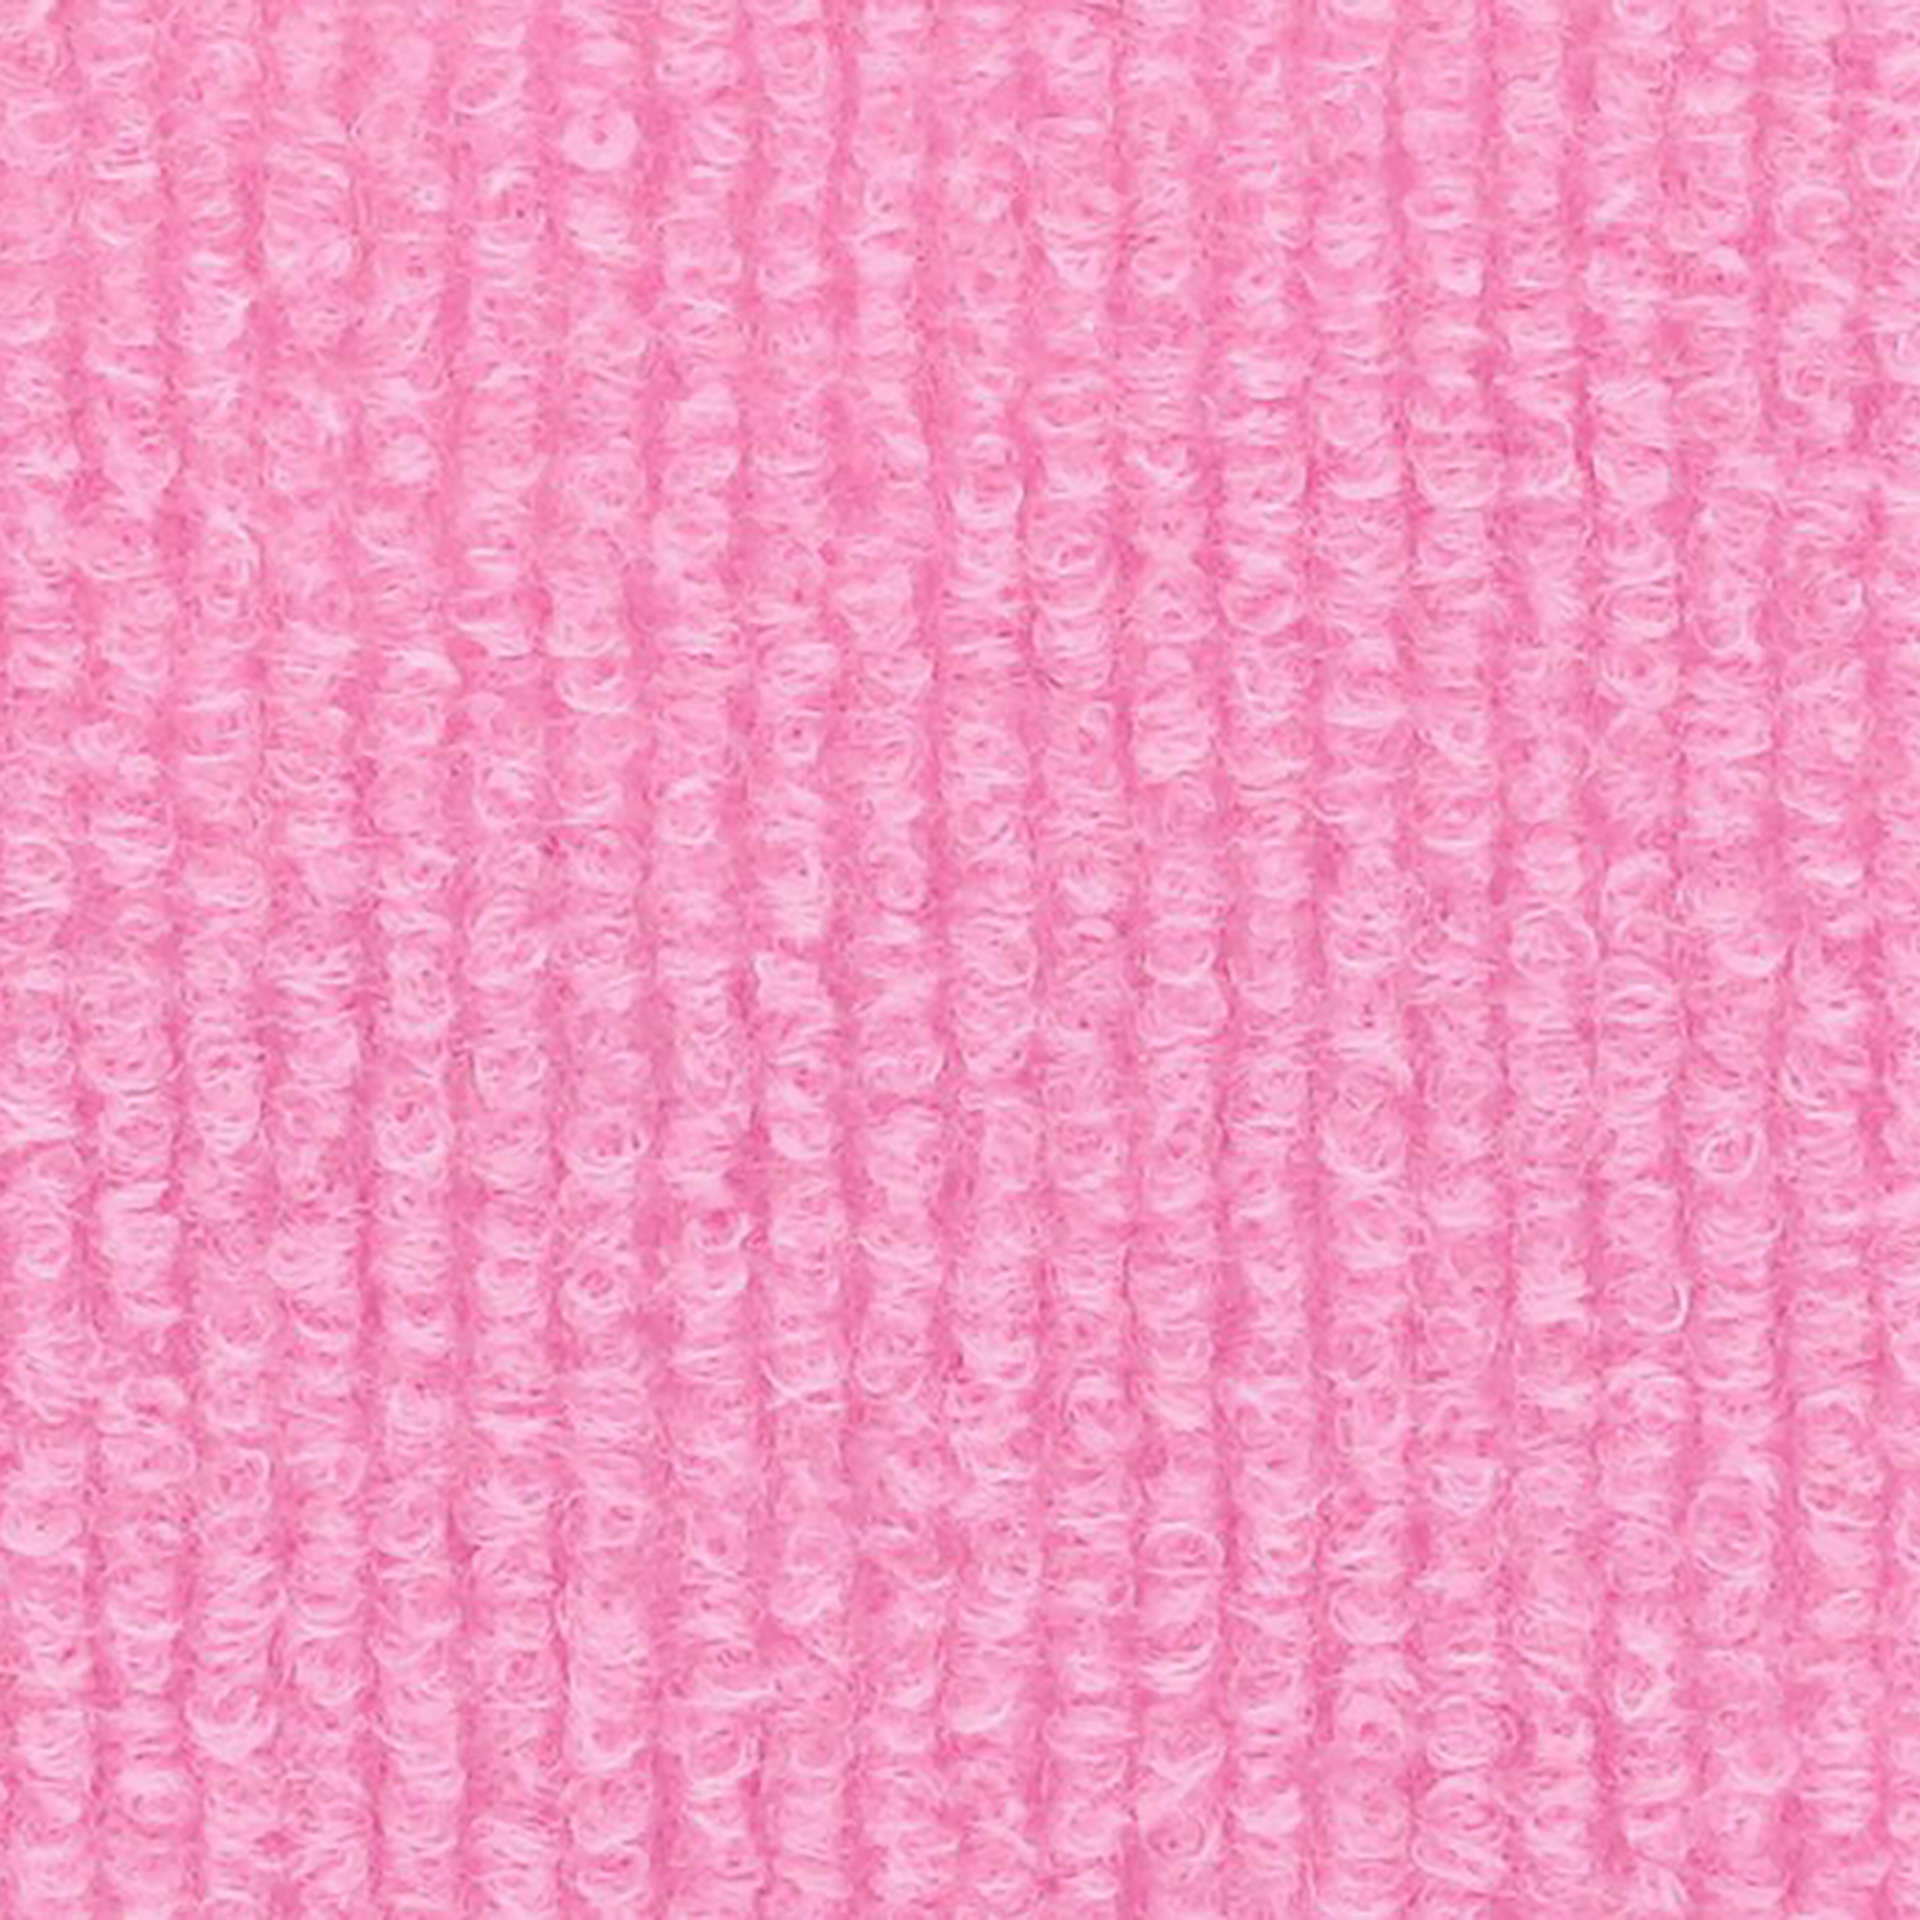 Messeboden Rips-Nadelvlies EXPOLINE Candy Pink 1722 100qm ohne Schutzfolie - Rollenbreite 200 cm